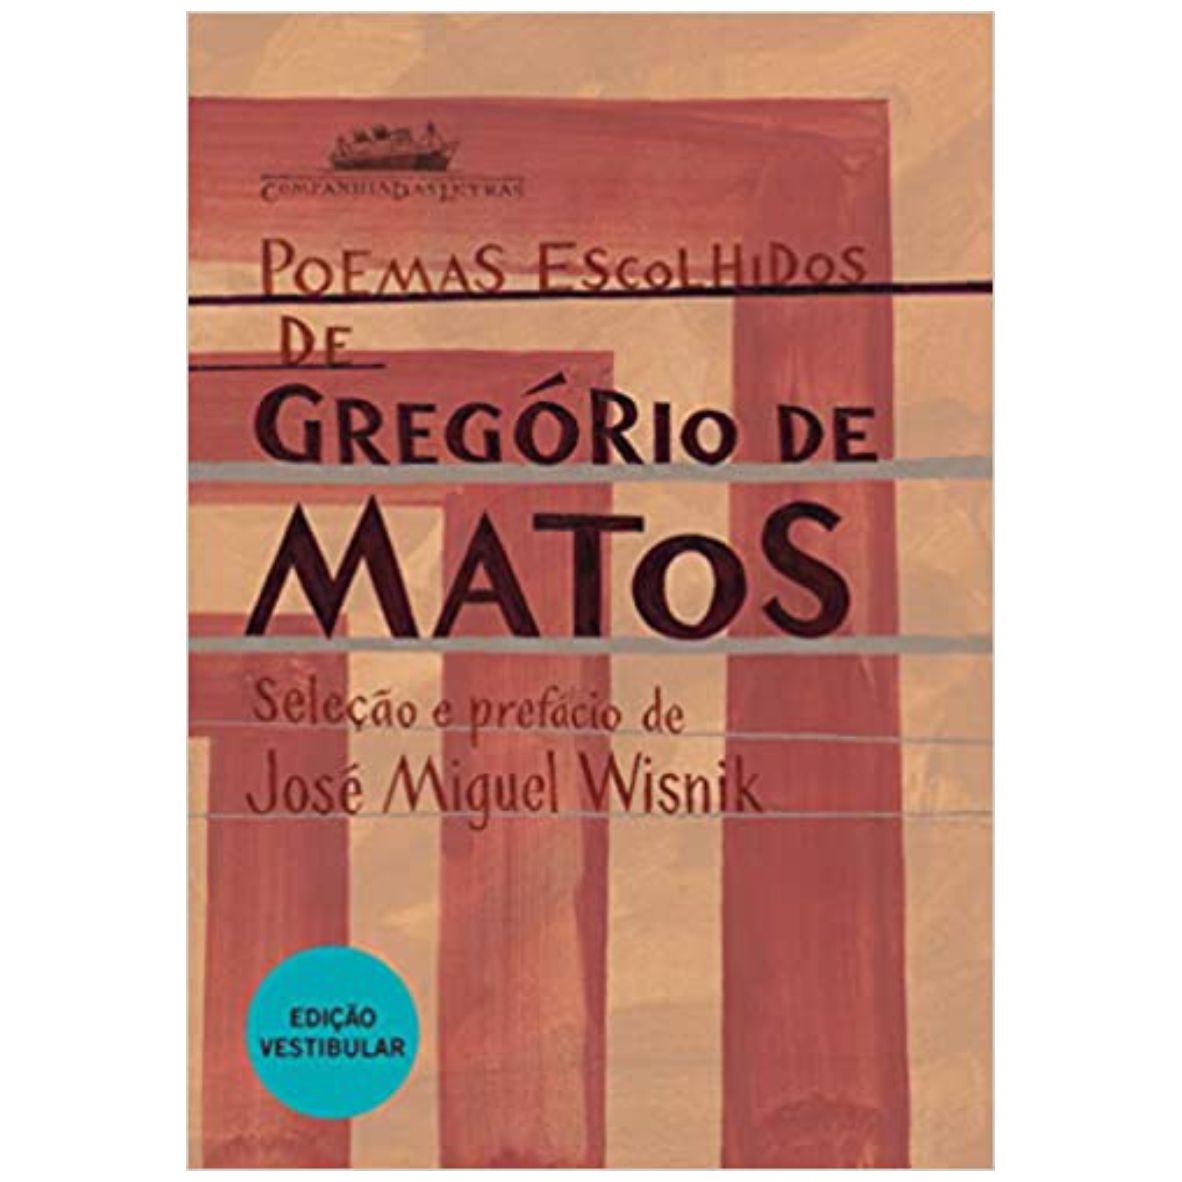 Livro Poemas escolhidos de Gregório de Matos - Editora Companhia das Letras